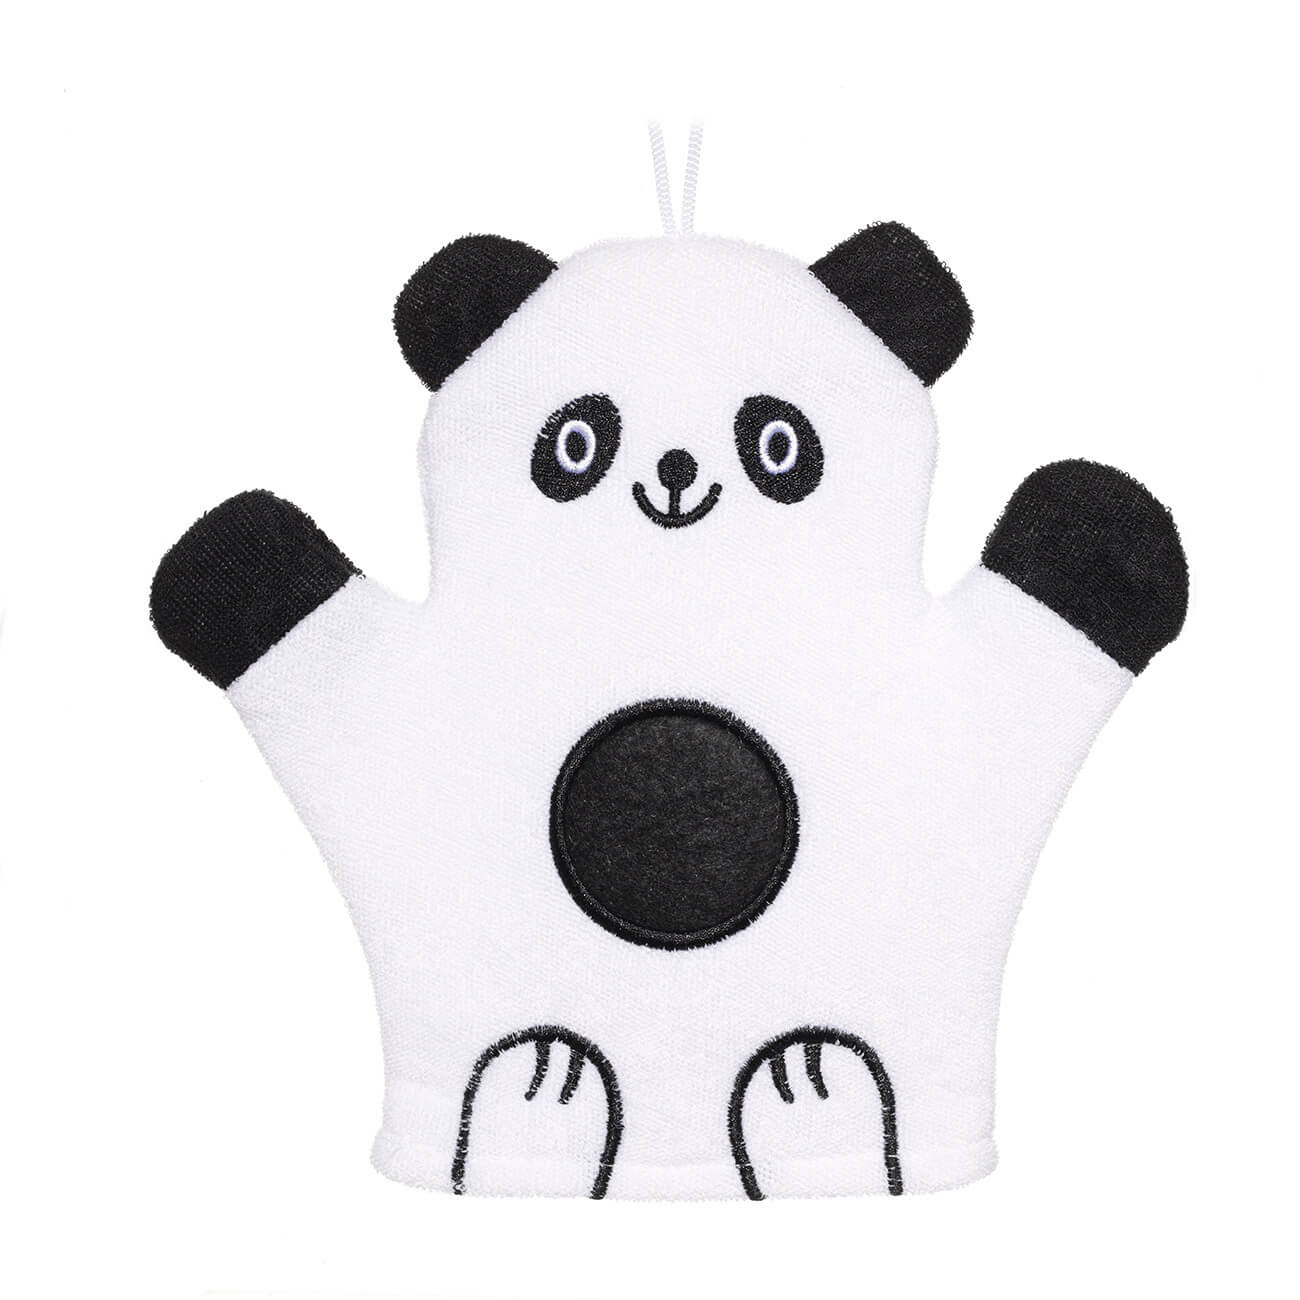 Мочалка-варежка для мытья тела, 20х20 см, детская, полиэстер, черно-белая, Панда, Panda изображение № 1